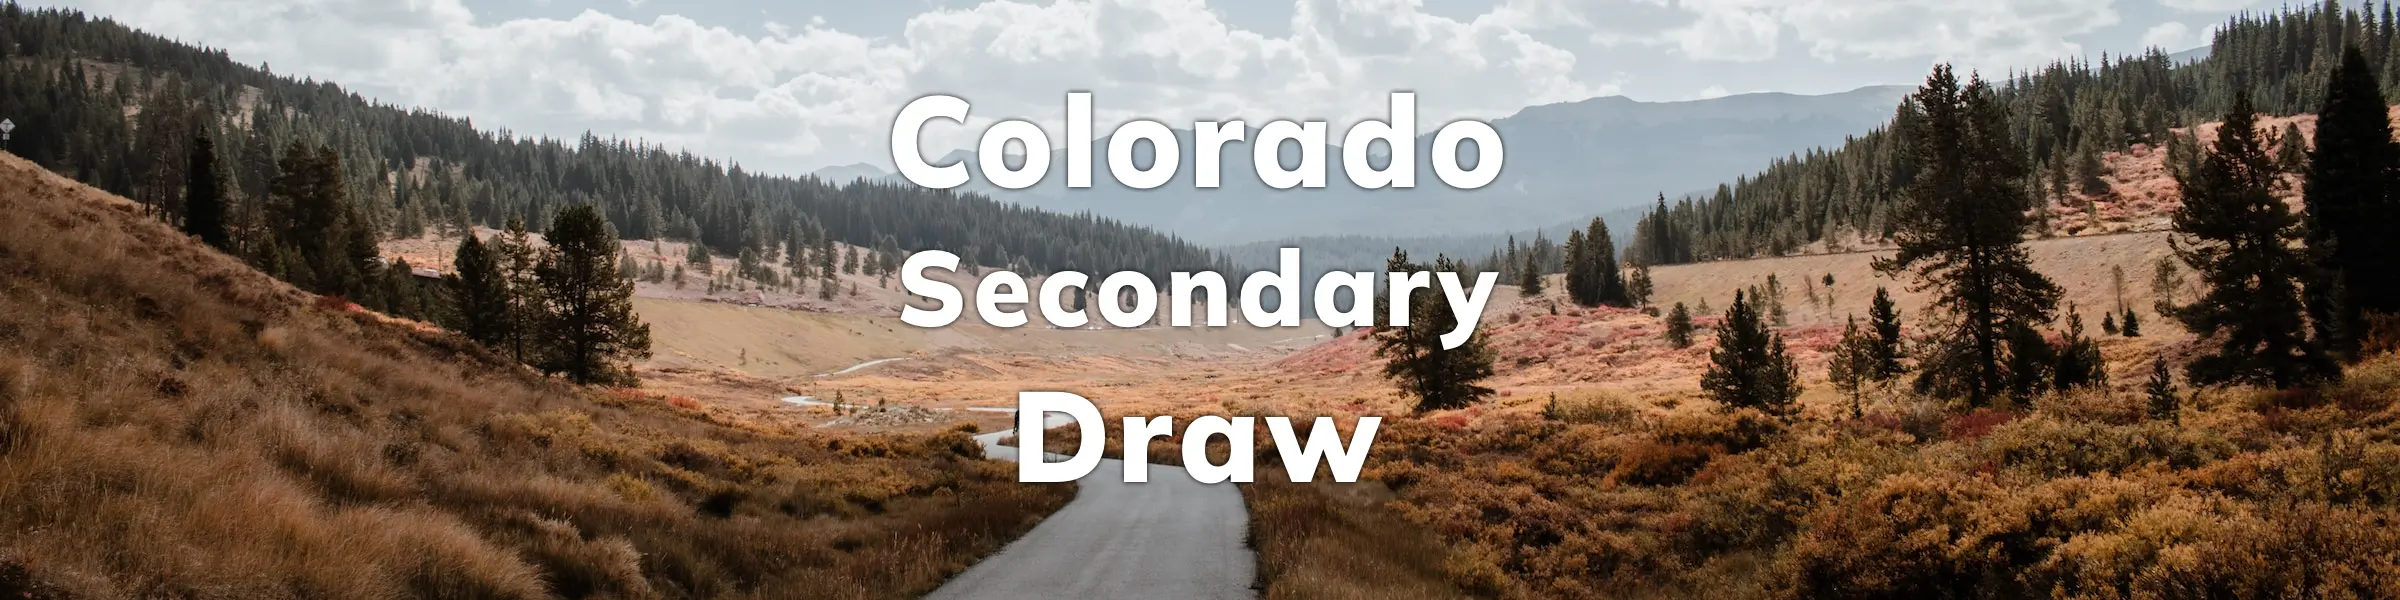 Colorado Secondary Draw